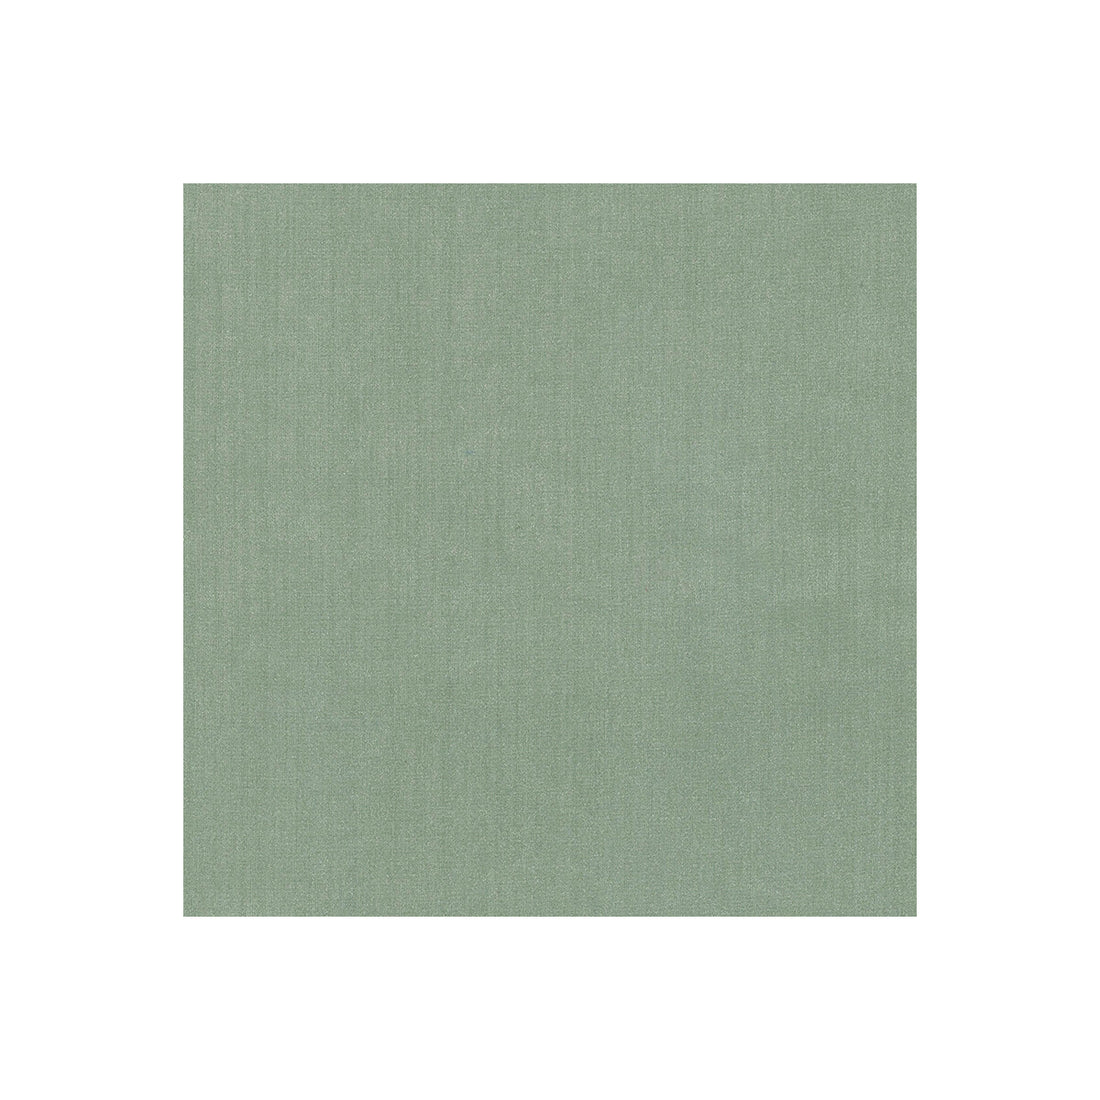 Kravet Basics fabric in 35916-313 color - pattern 35916.313.0 - by Kravet Basics